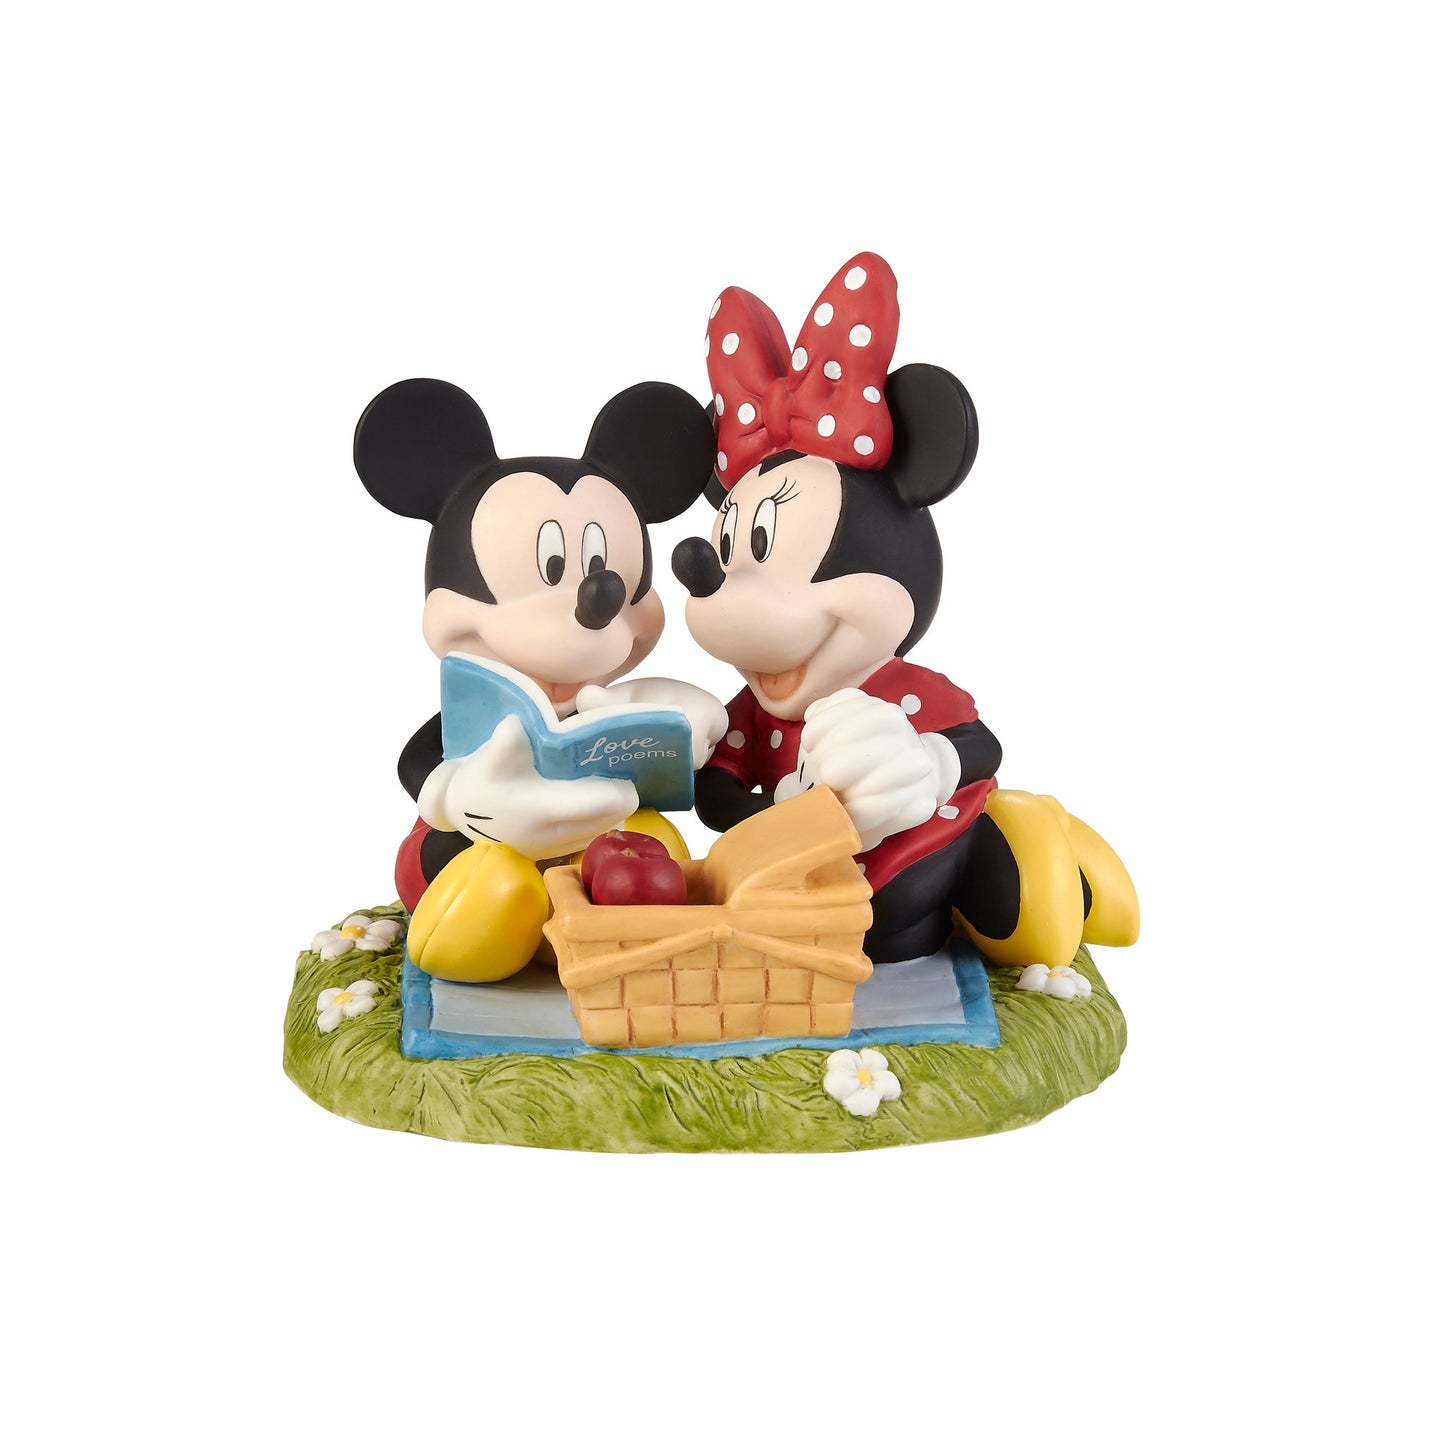 La vie avec toi est toujours un pique-nique Disney Figurine Mickey Mouse et Minnie Mouse